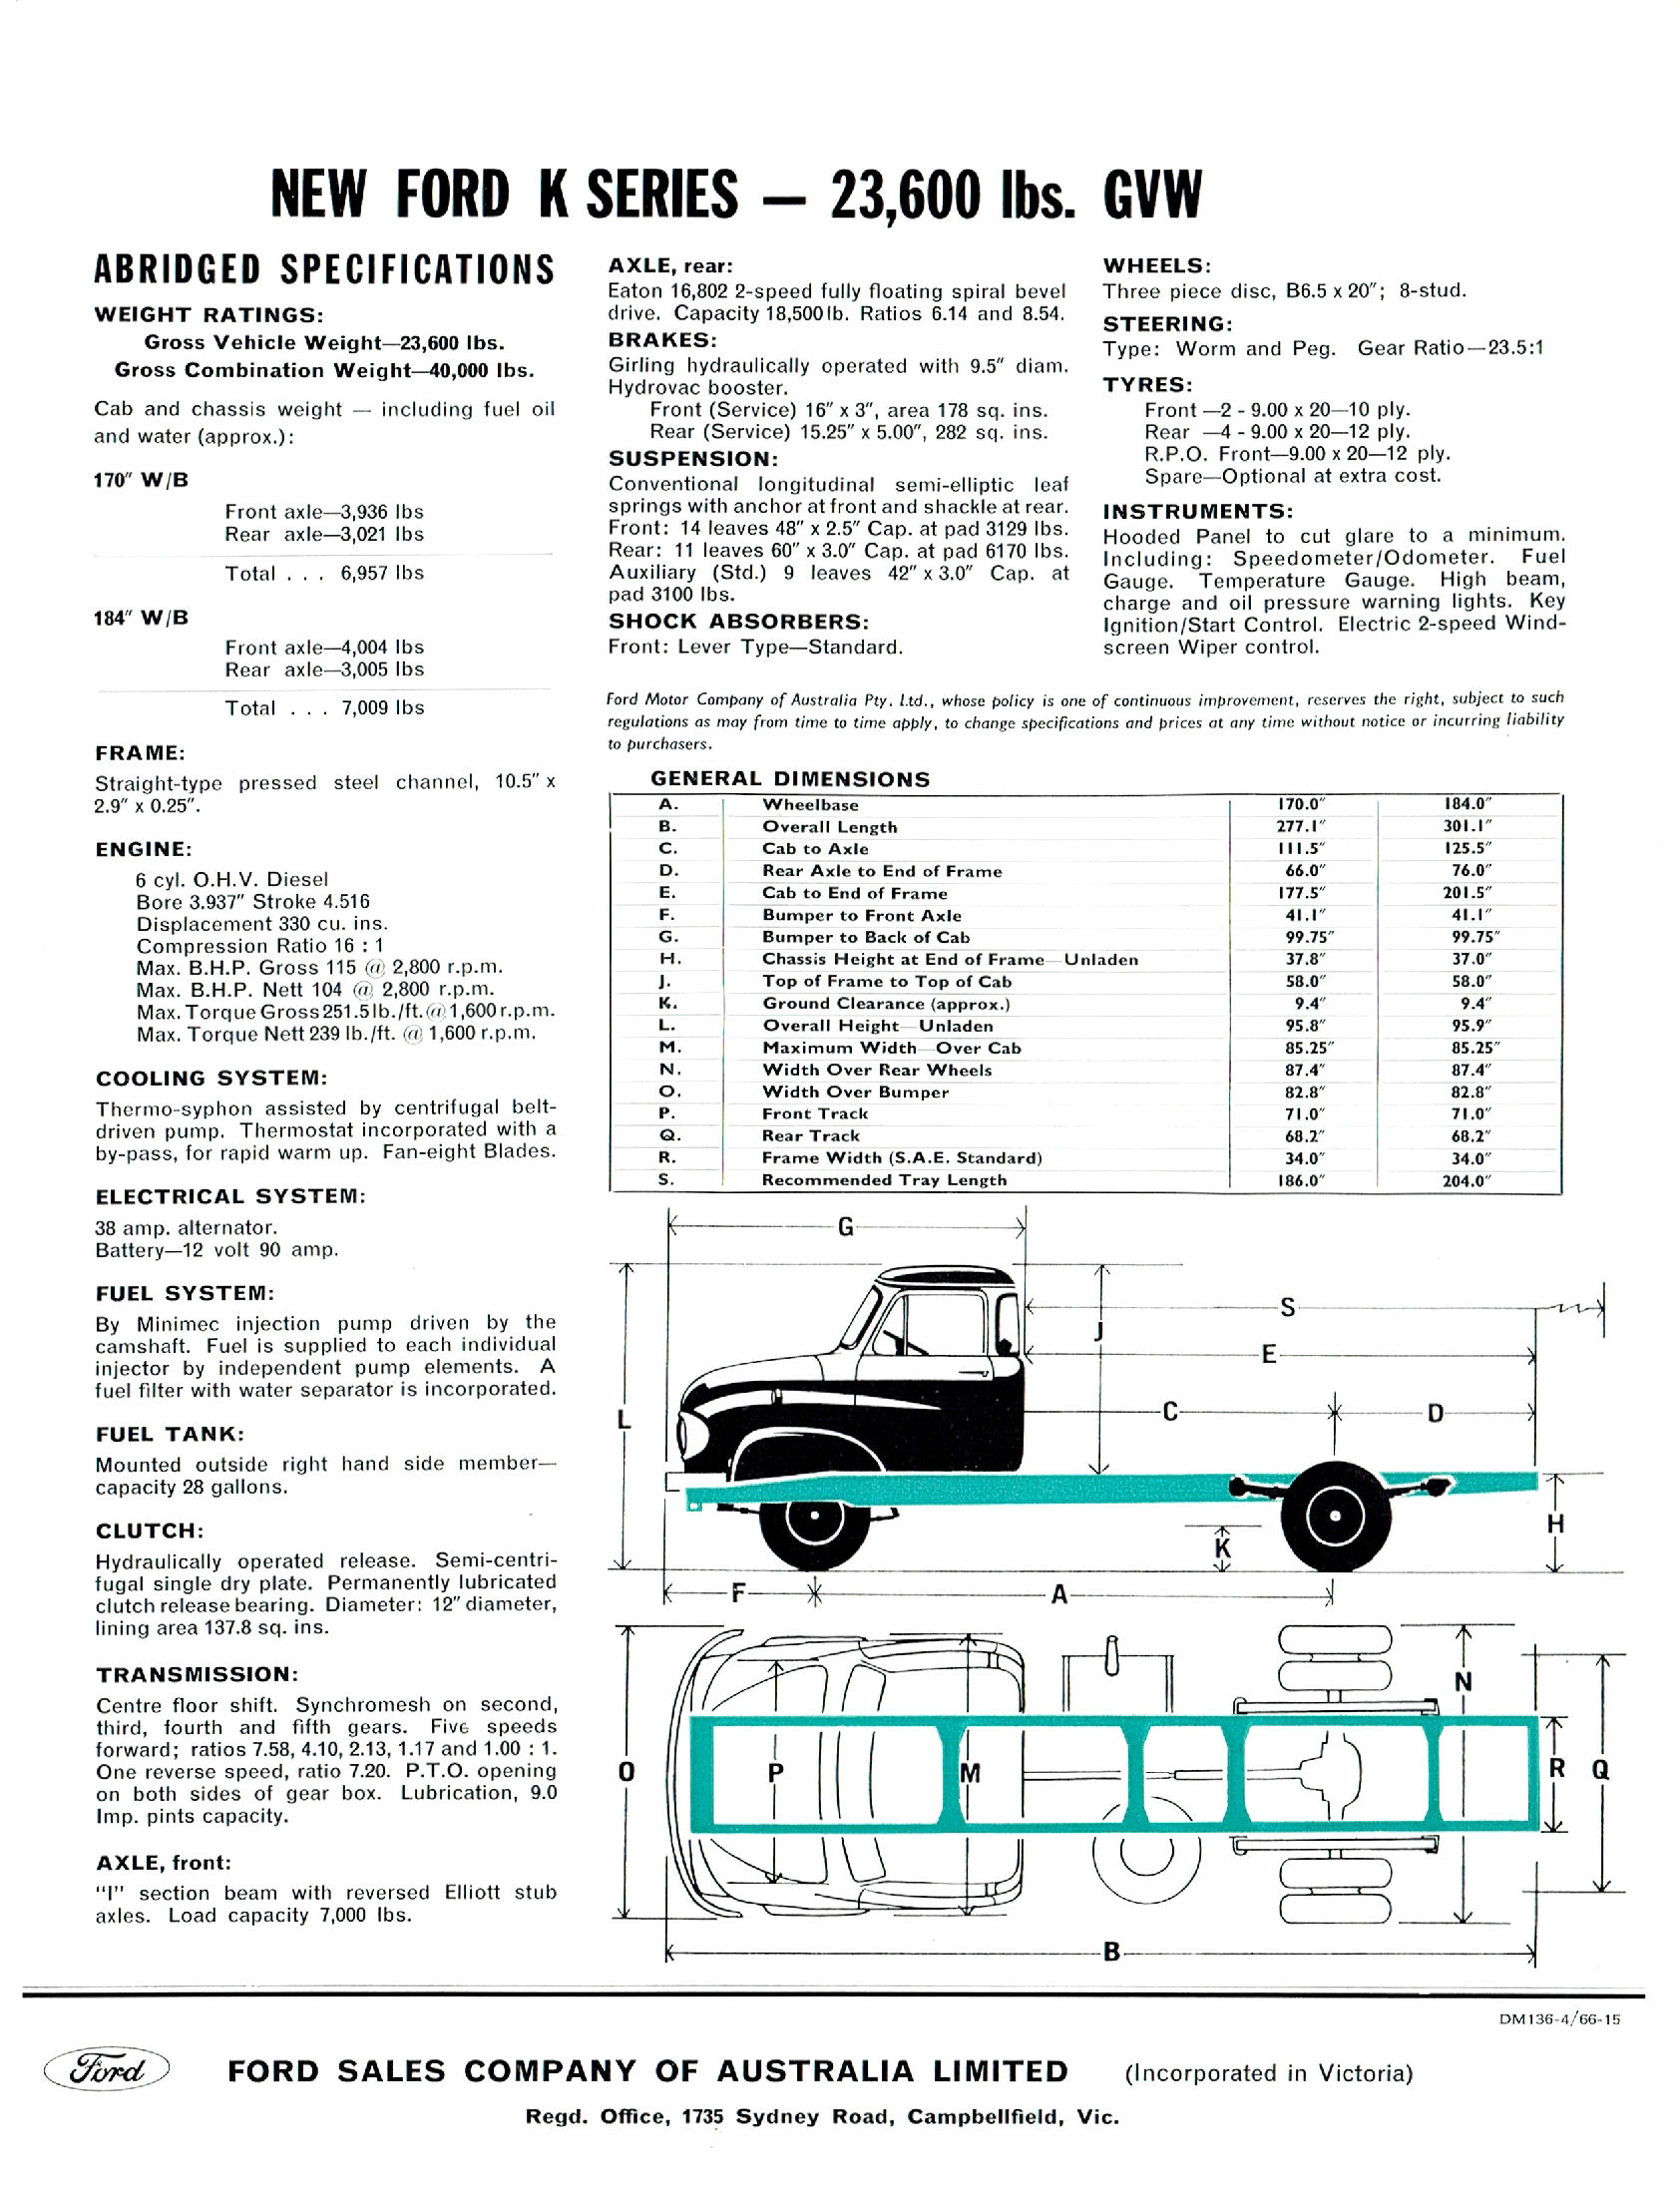 1966 Ford K700 Trucks-04 (Aus).jpg-2022-12-7 13.20.36